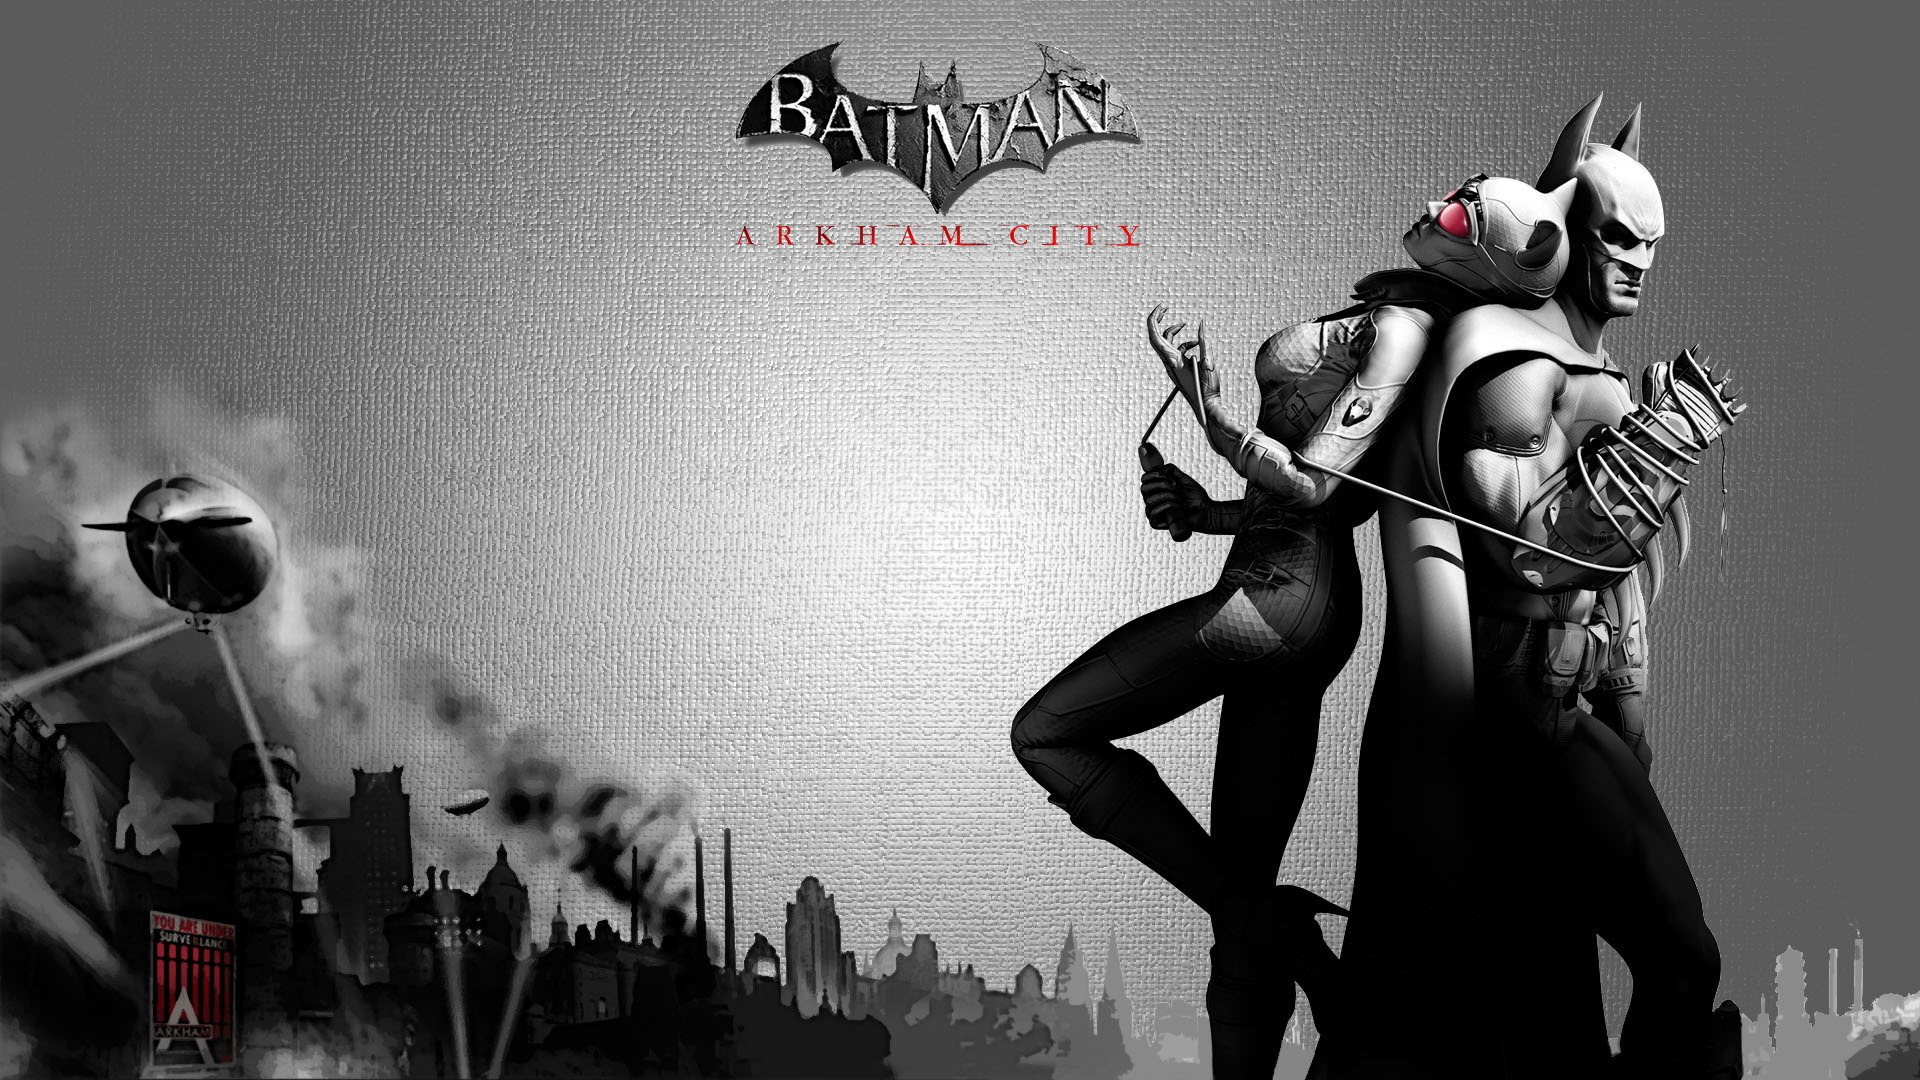 [49+] Batman Arkham City Wallpapers - WallpaperSafari